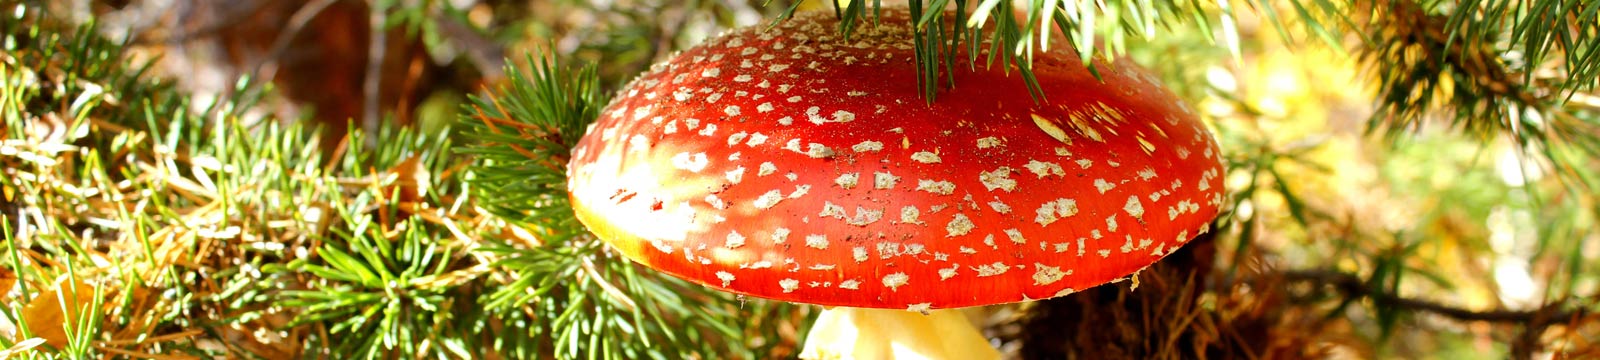 Ядовитые грибы - WayDom.ru